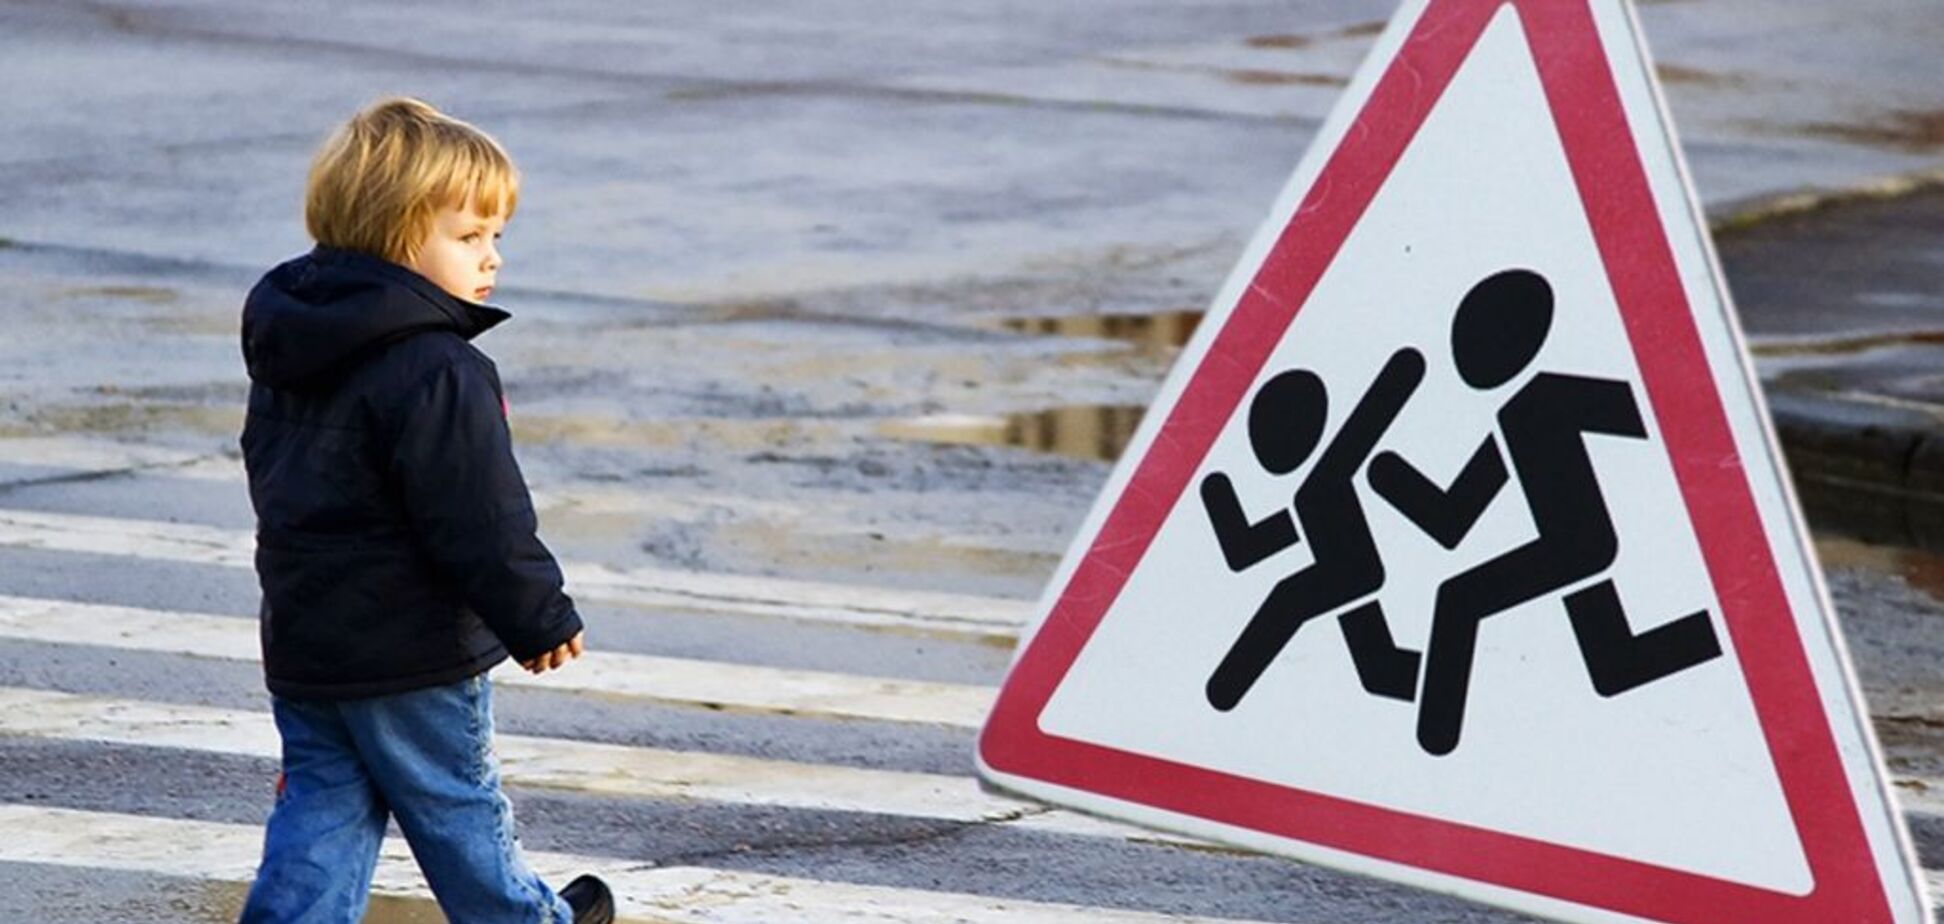 Правила поведения на дороге – 7 суперважных моментов для детей и взрослых